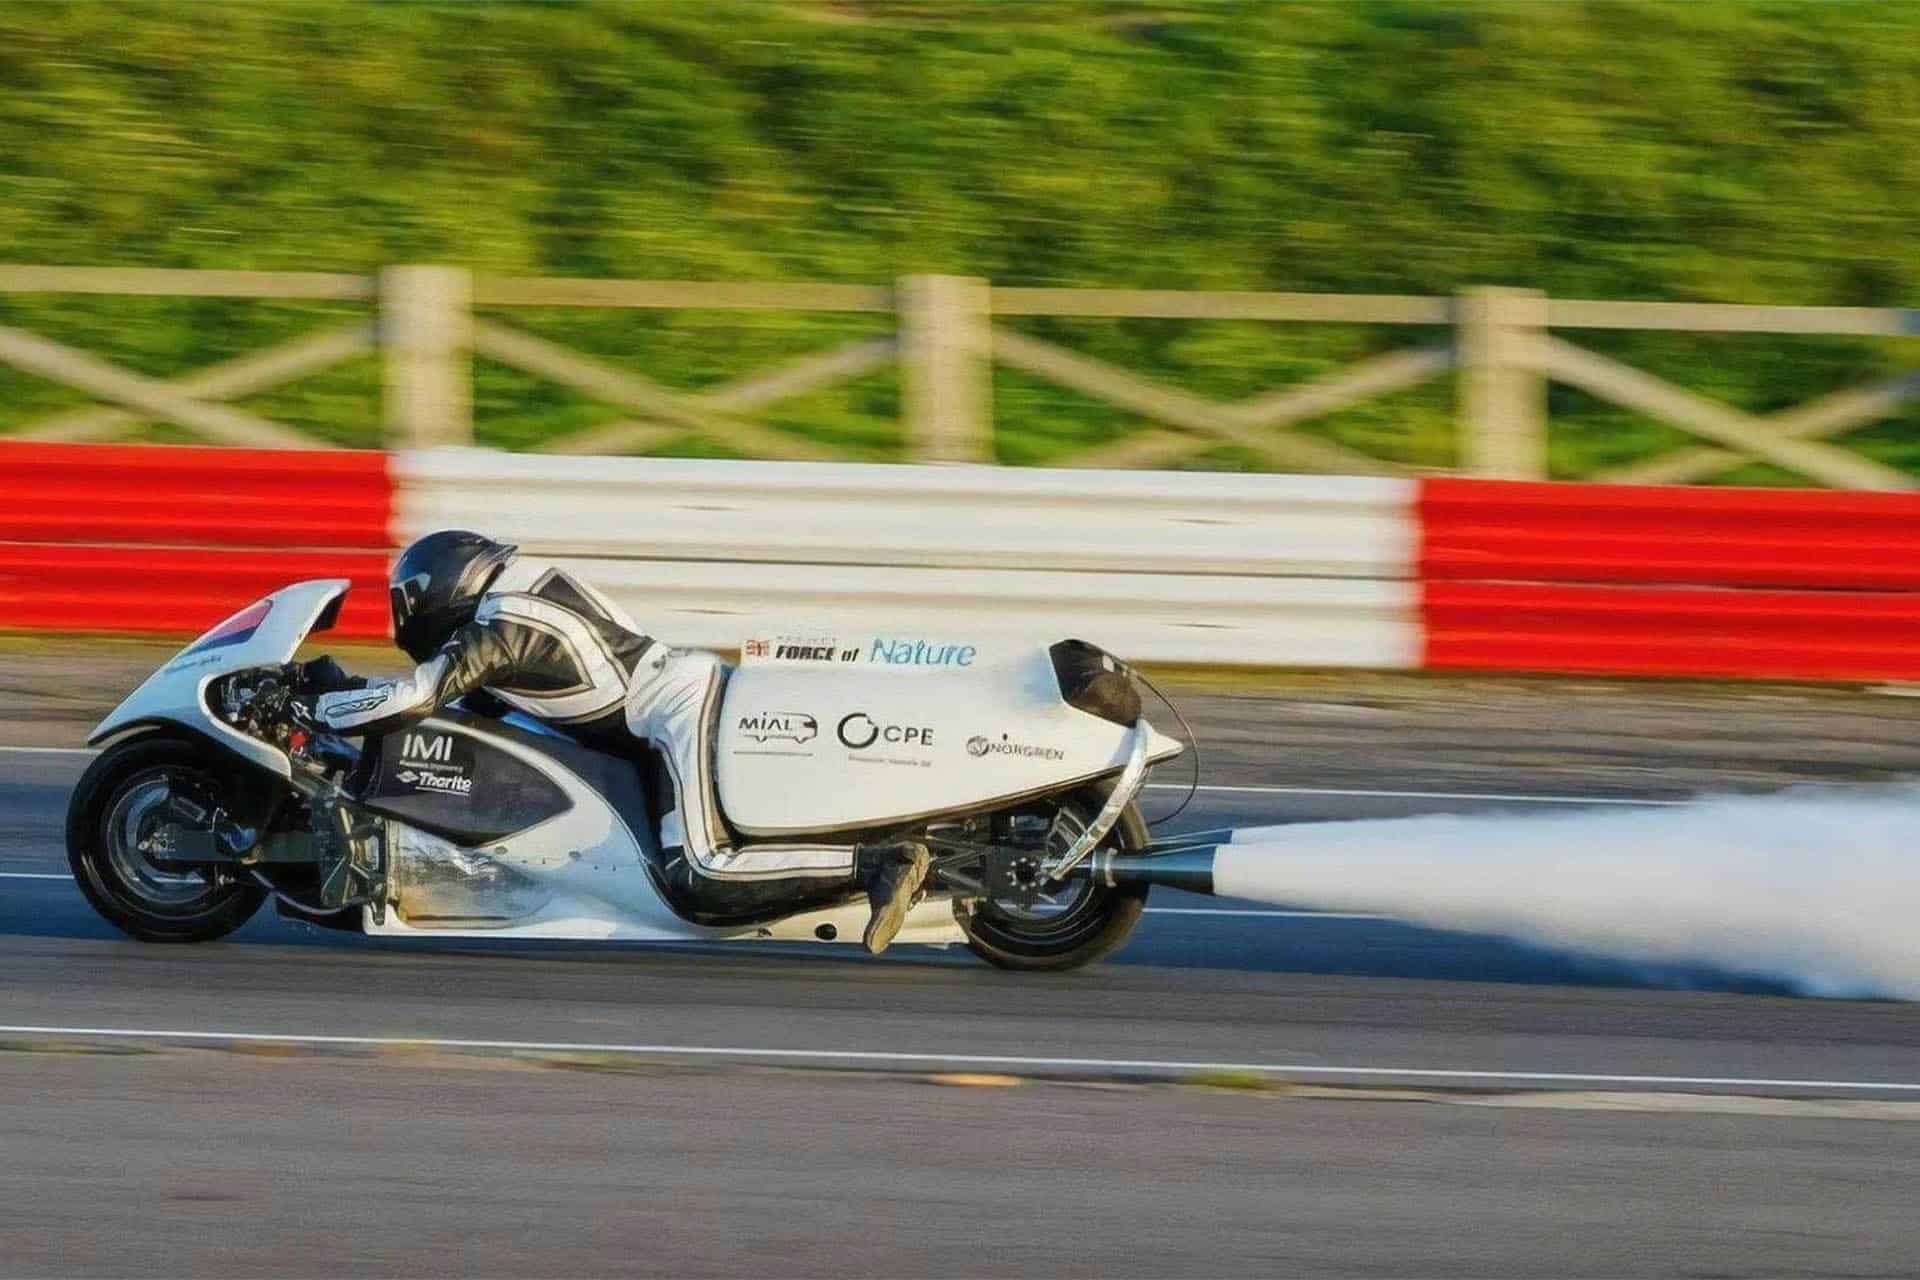 Una moto de vapor que rompe récords de aceleración ¡Science b***h!